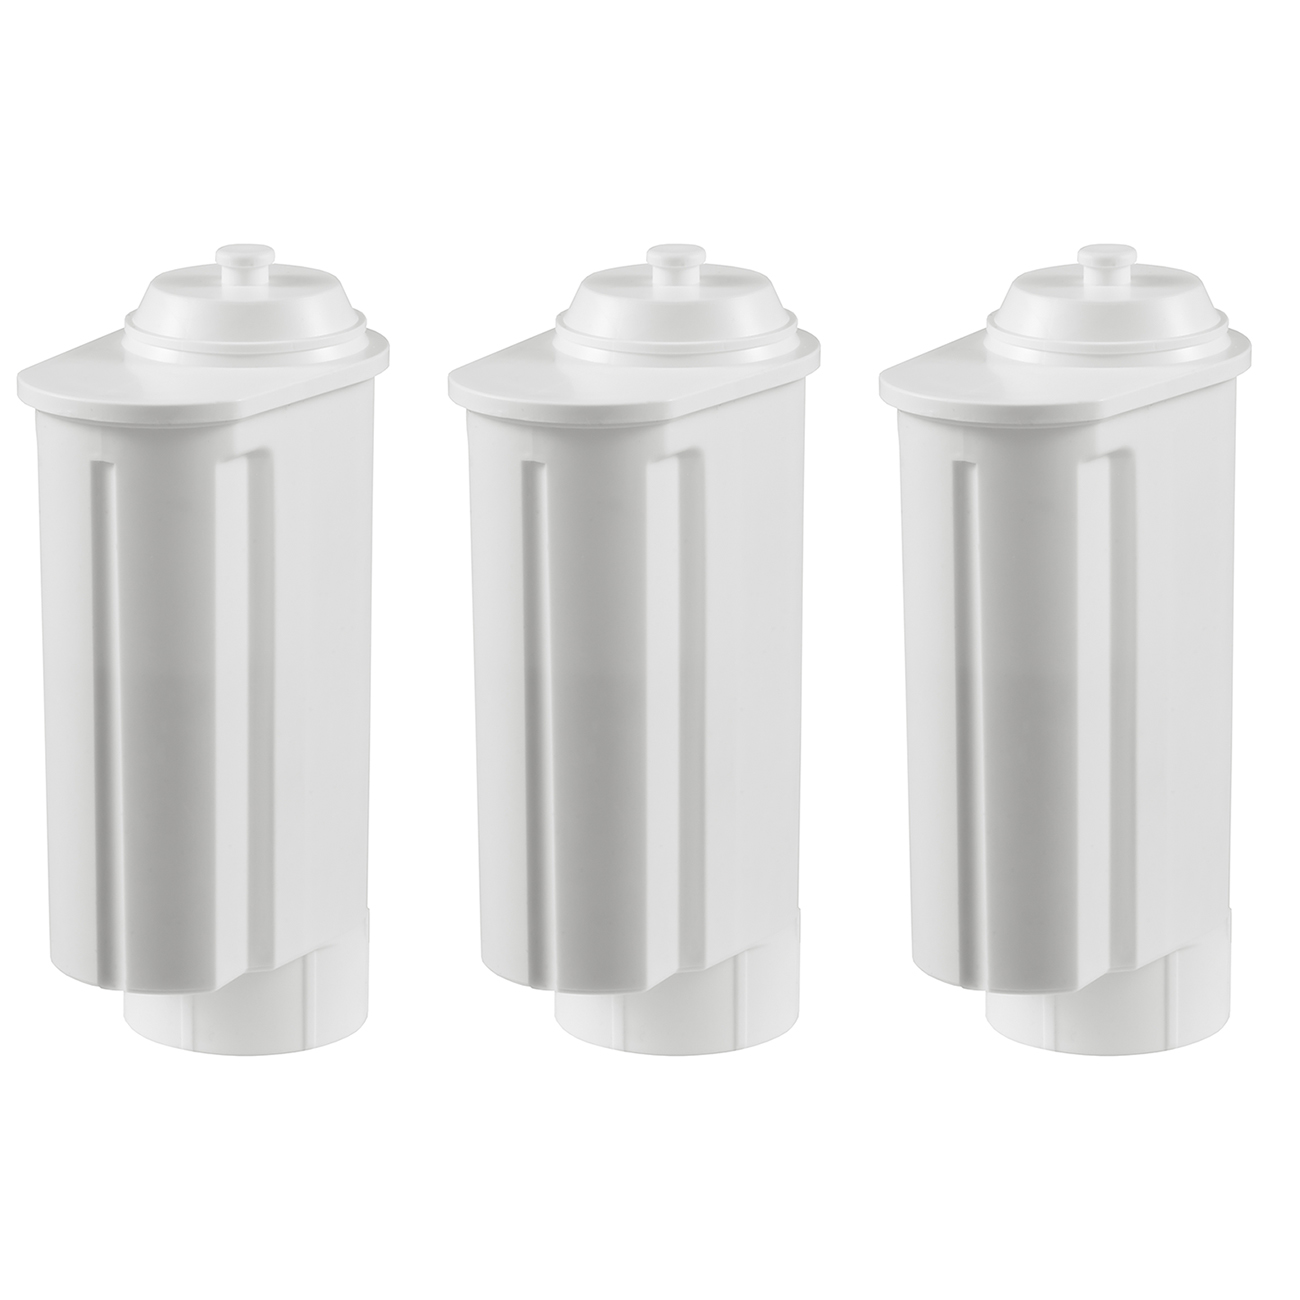 3 Stück Wasserfilterkartuschen Patronen passend für alle Siemens/Bosch Gaggenau-, Neff-,VeroBar-Professional-Serie Kaffeevollautomaten